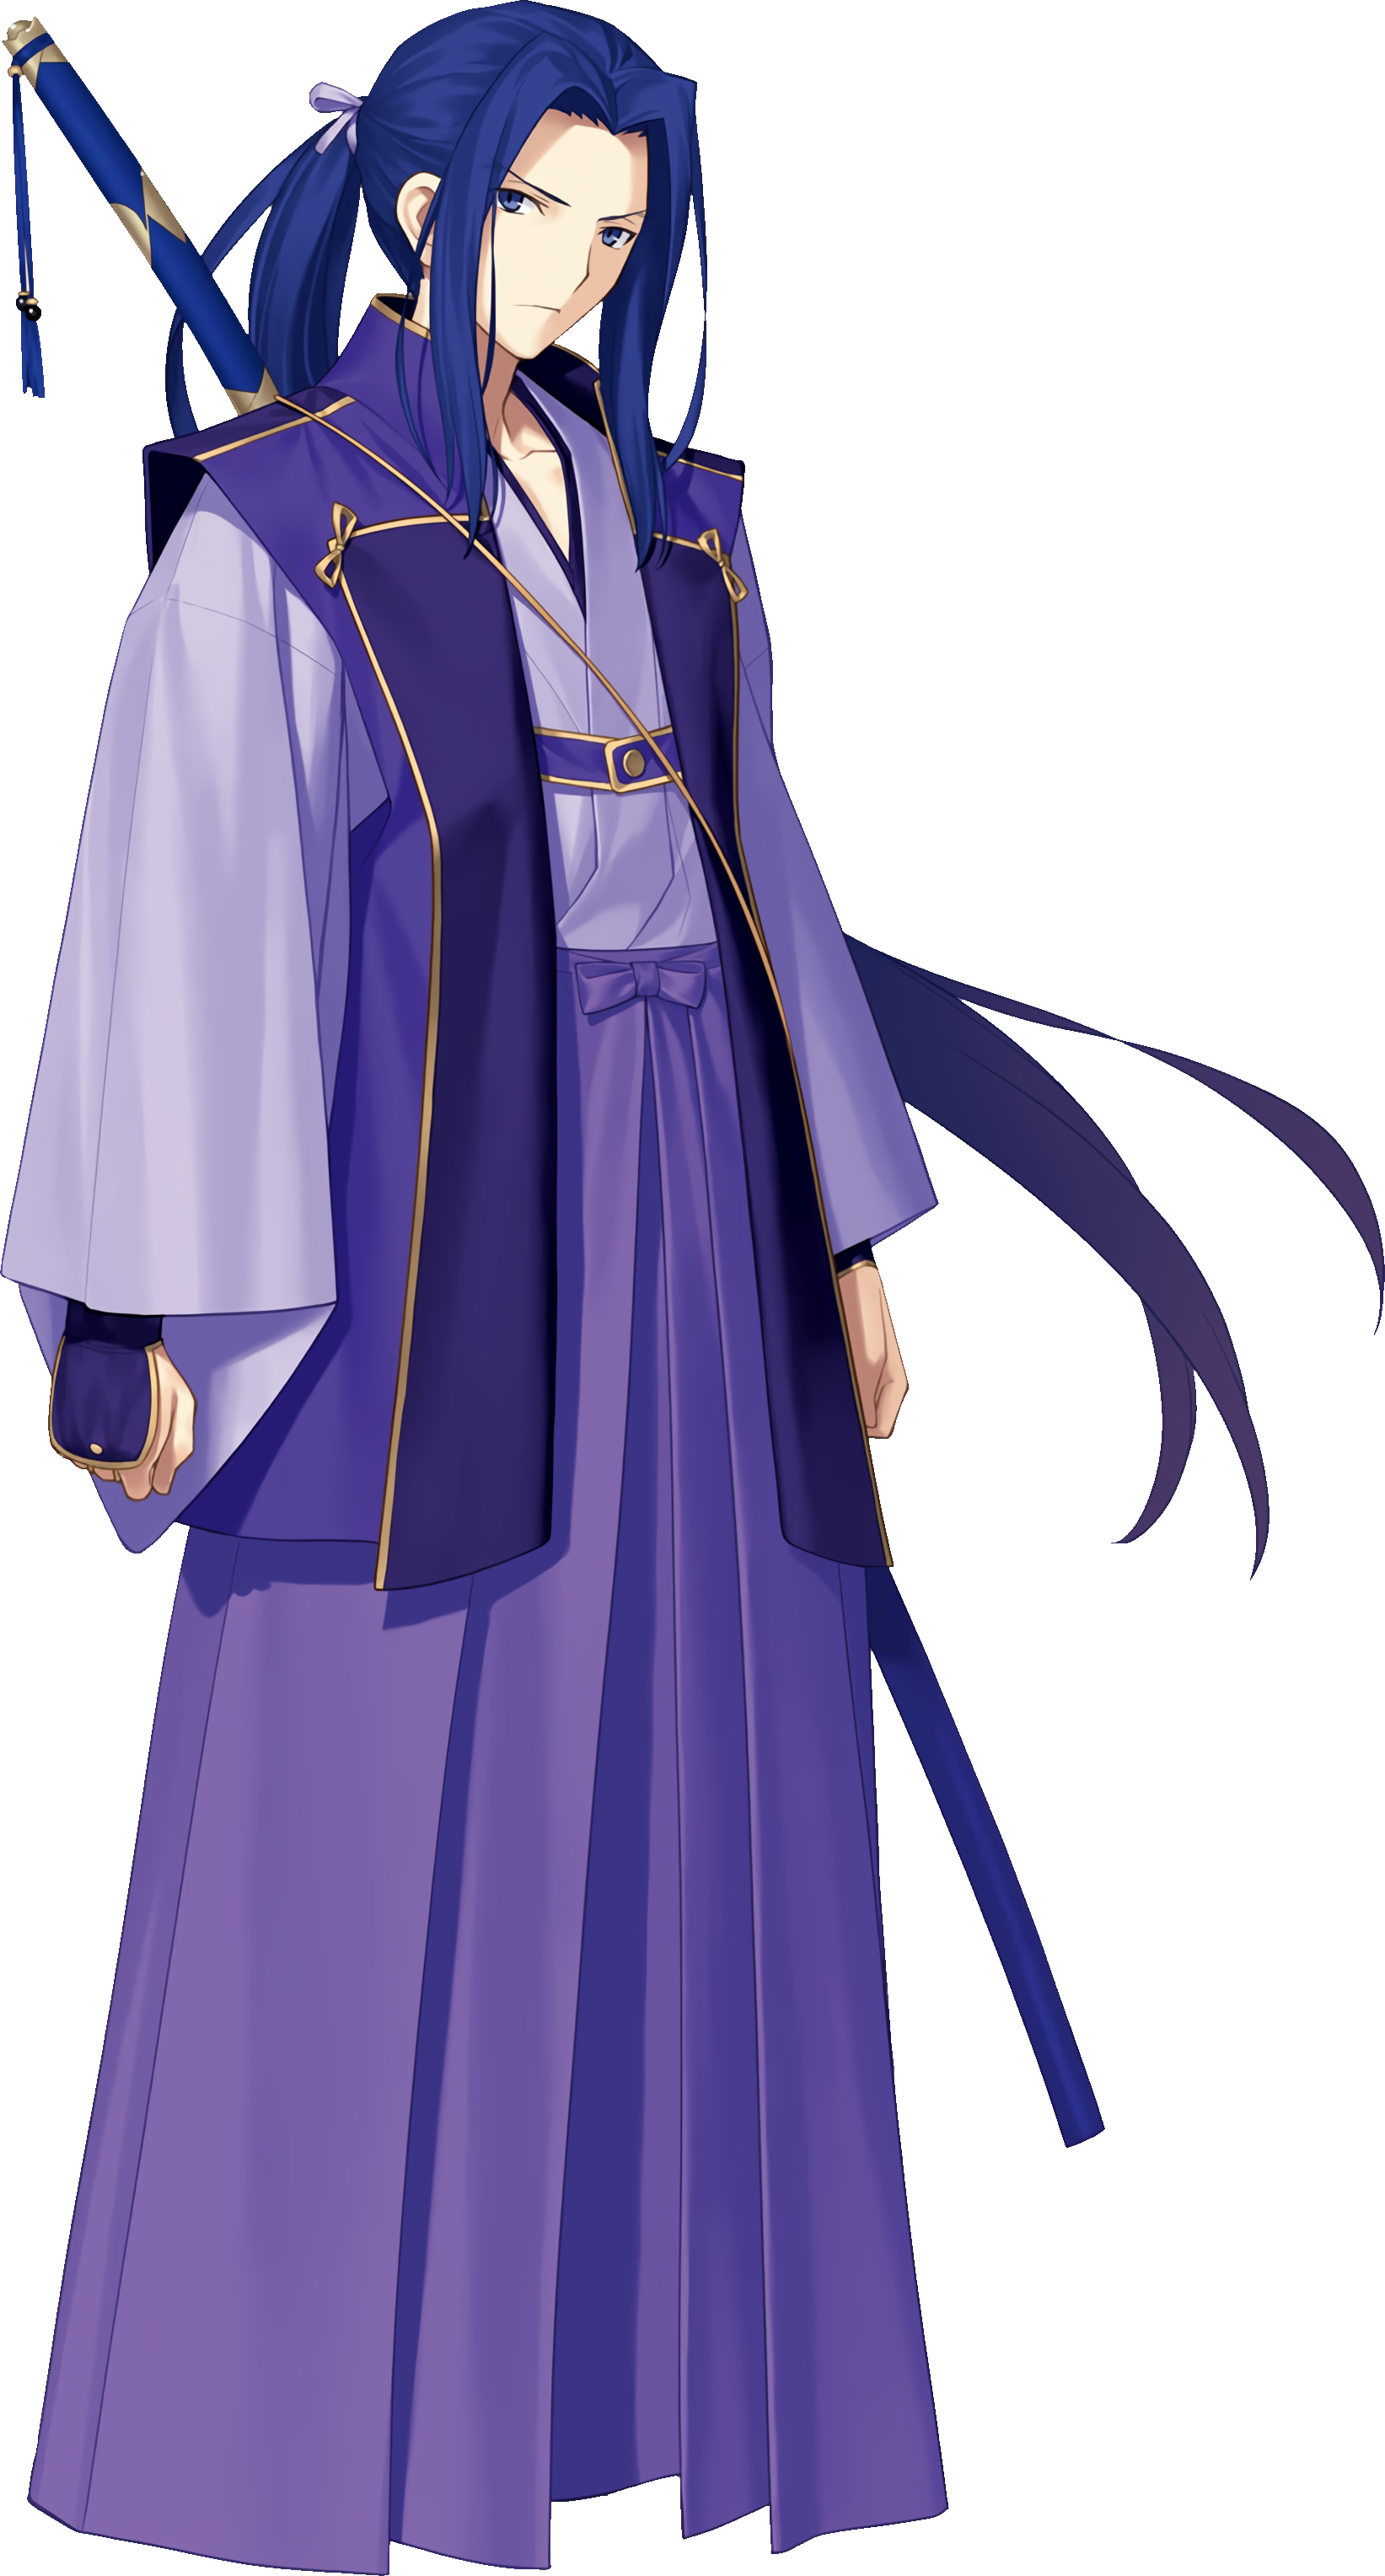 Fate Stay Night Heaven's Feel Sakura Anime Cloak Blanket Grail of Makiri  Manga Role Fate Grand Order fgo Action Figure Gift